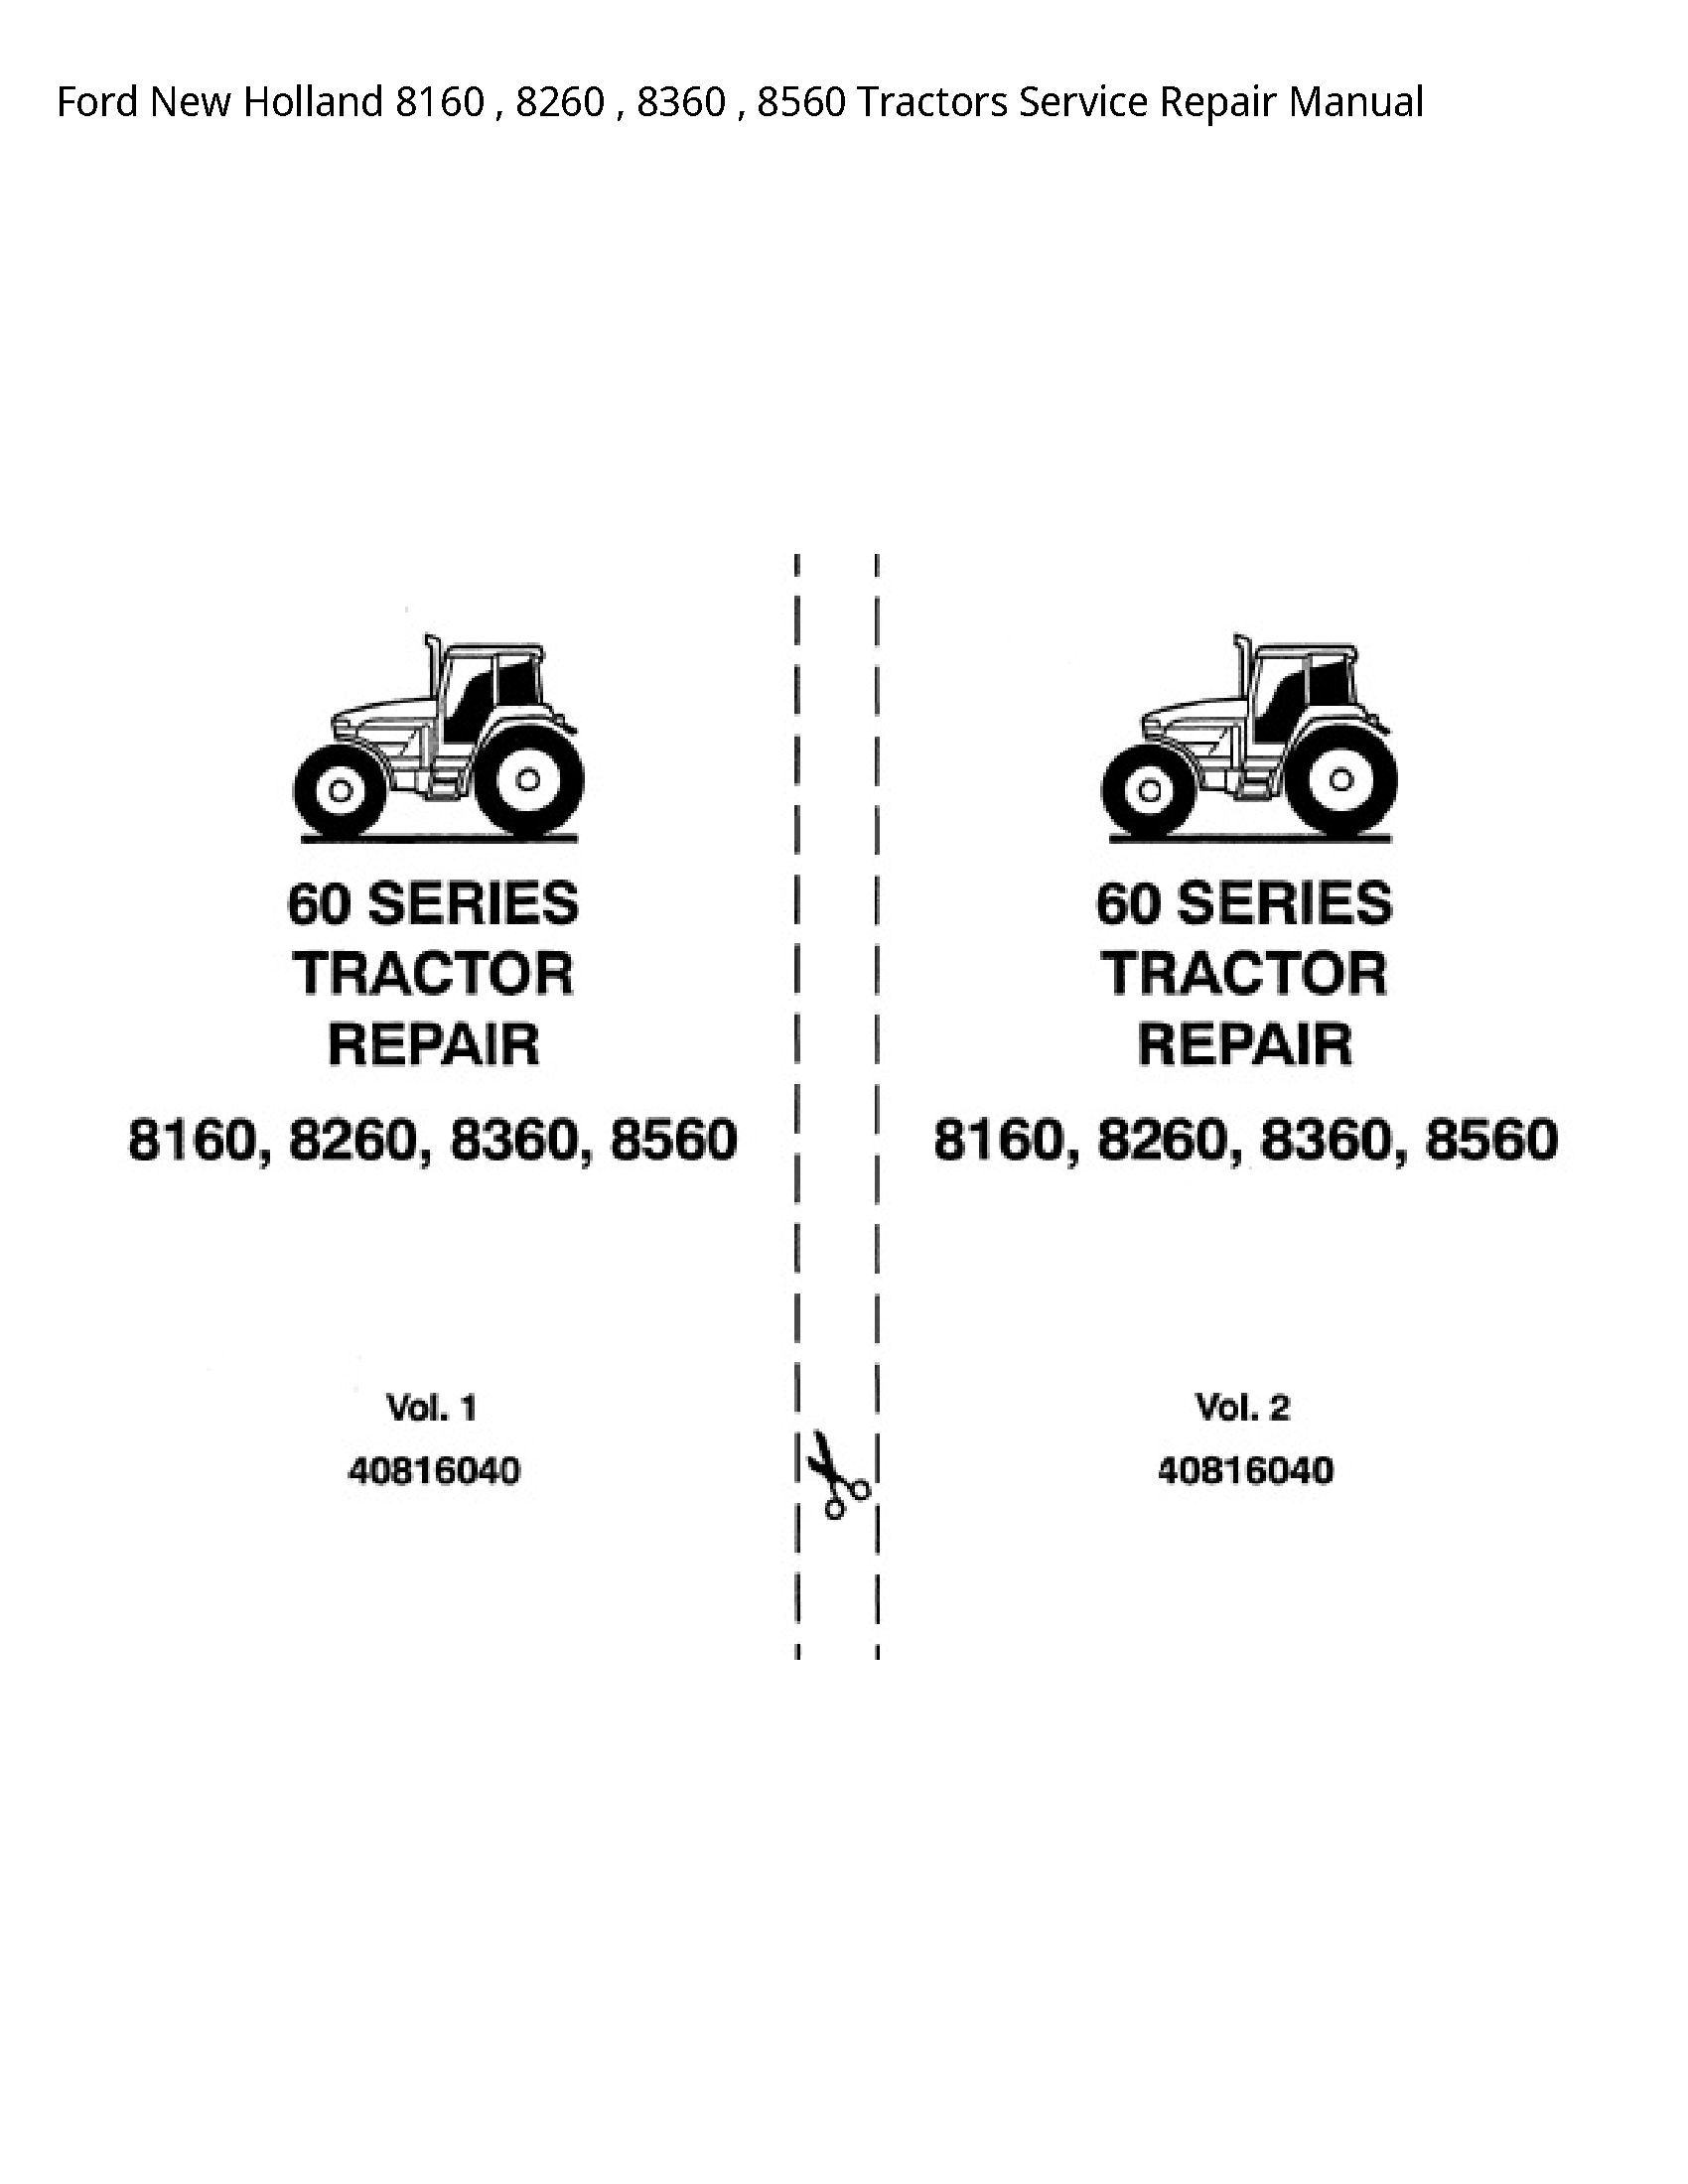  8160 Tractors manual